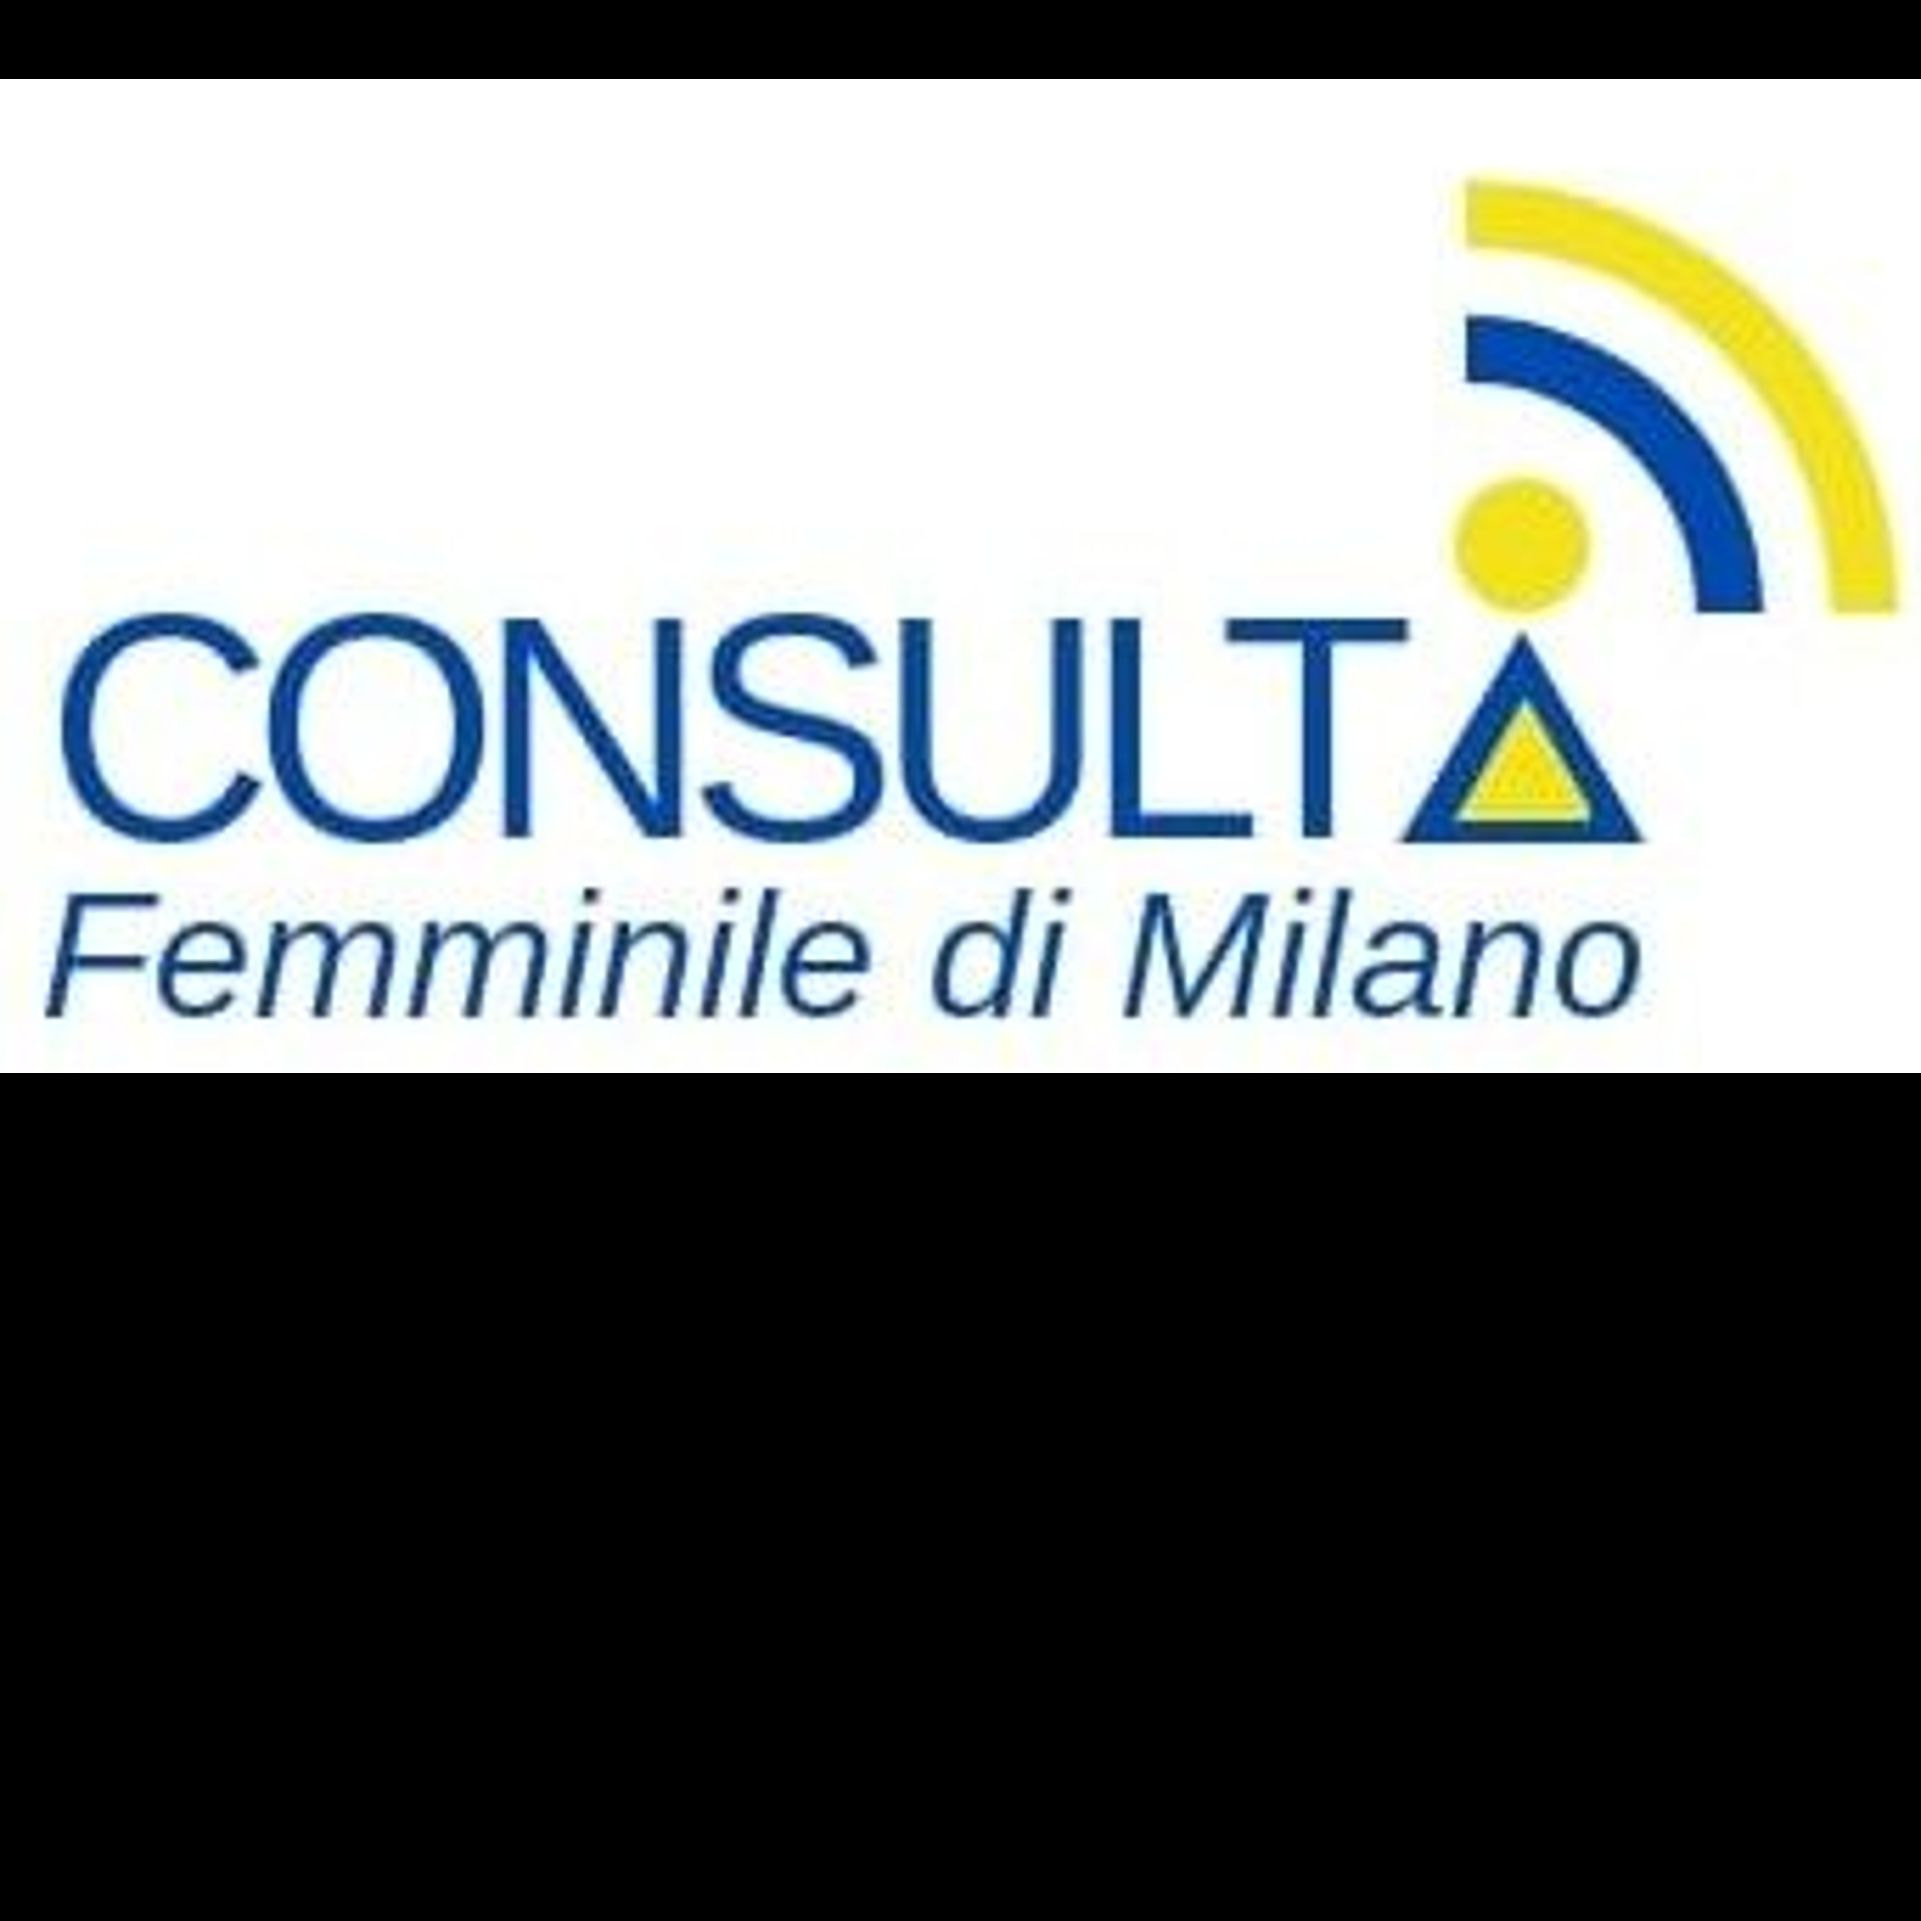 Consulta femminile di Milano